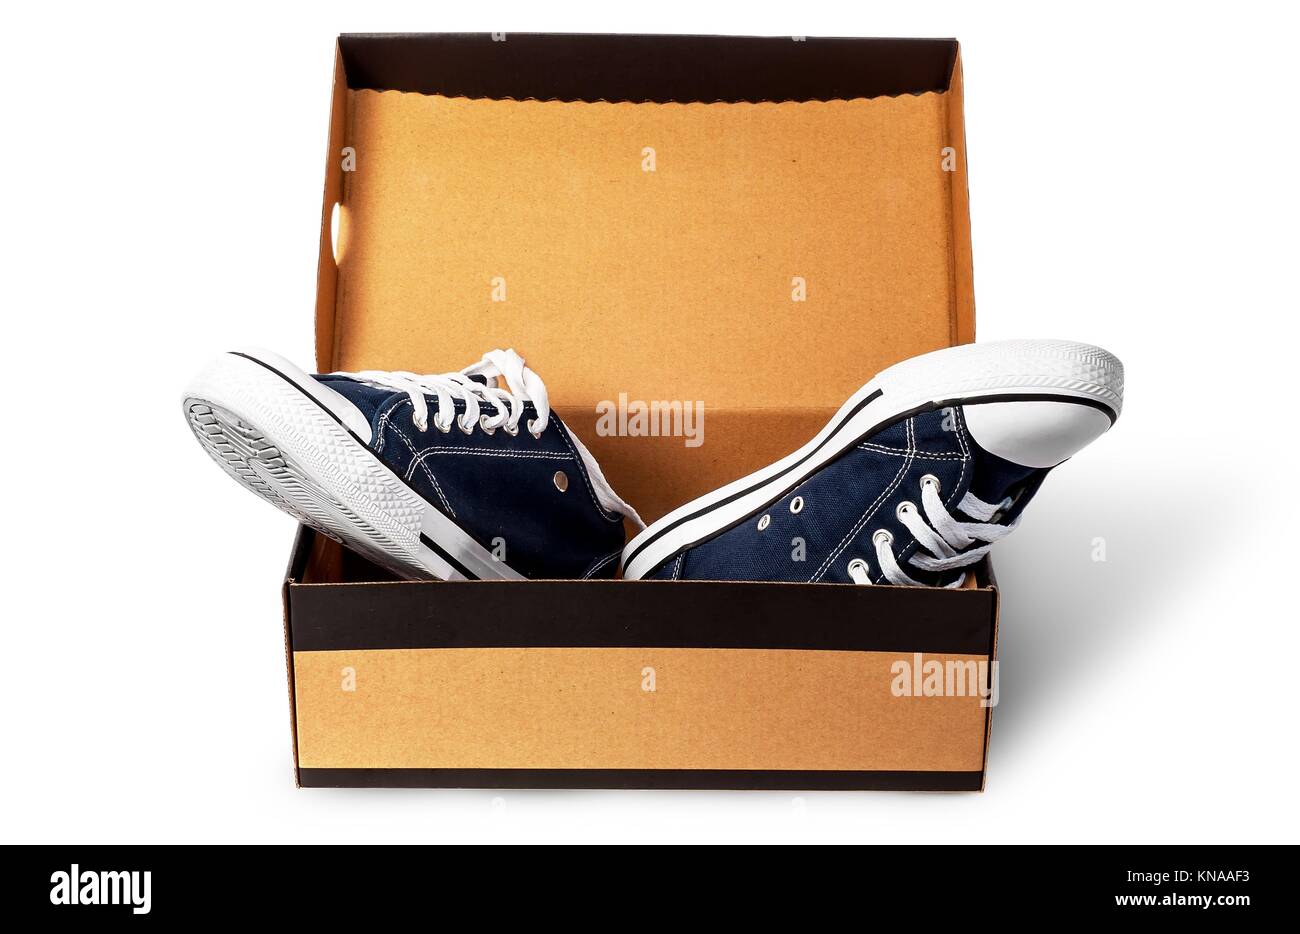 Sport shoes box immagini e fotografie stock ad alta risoluzione - Alamy